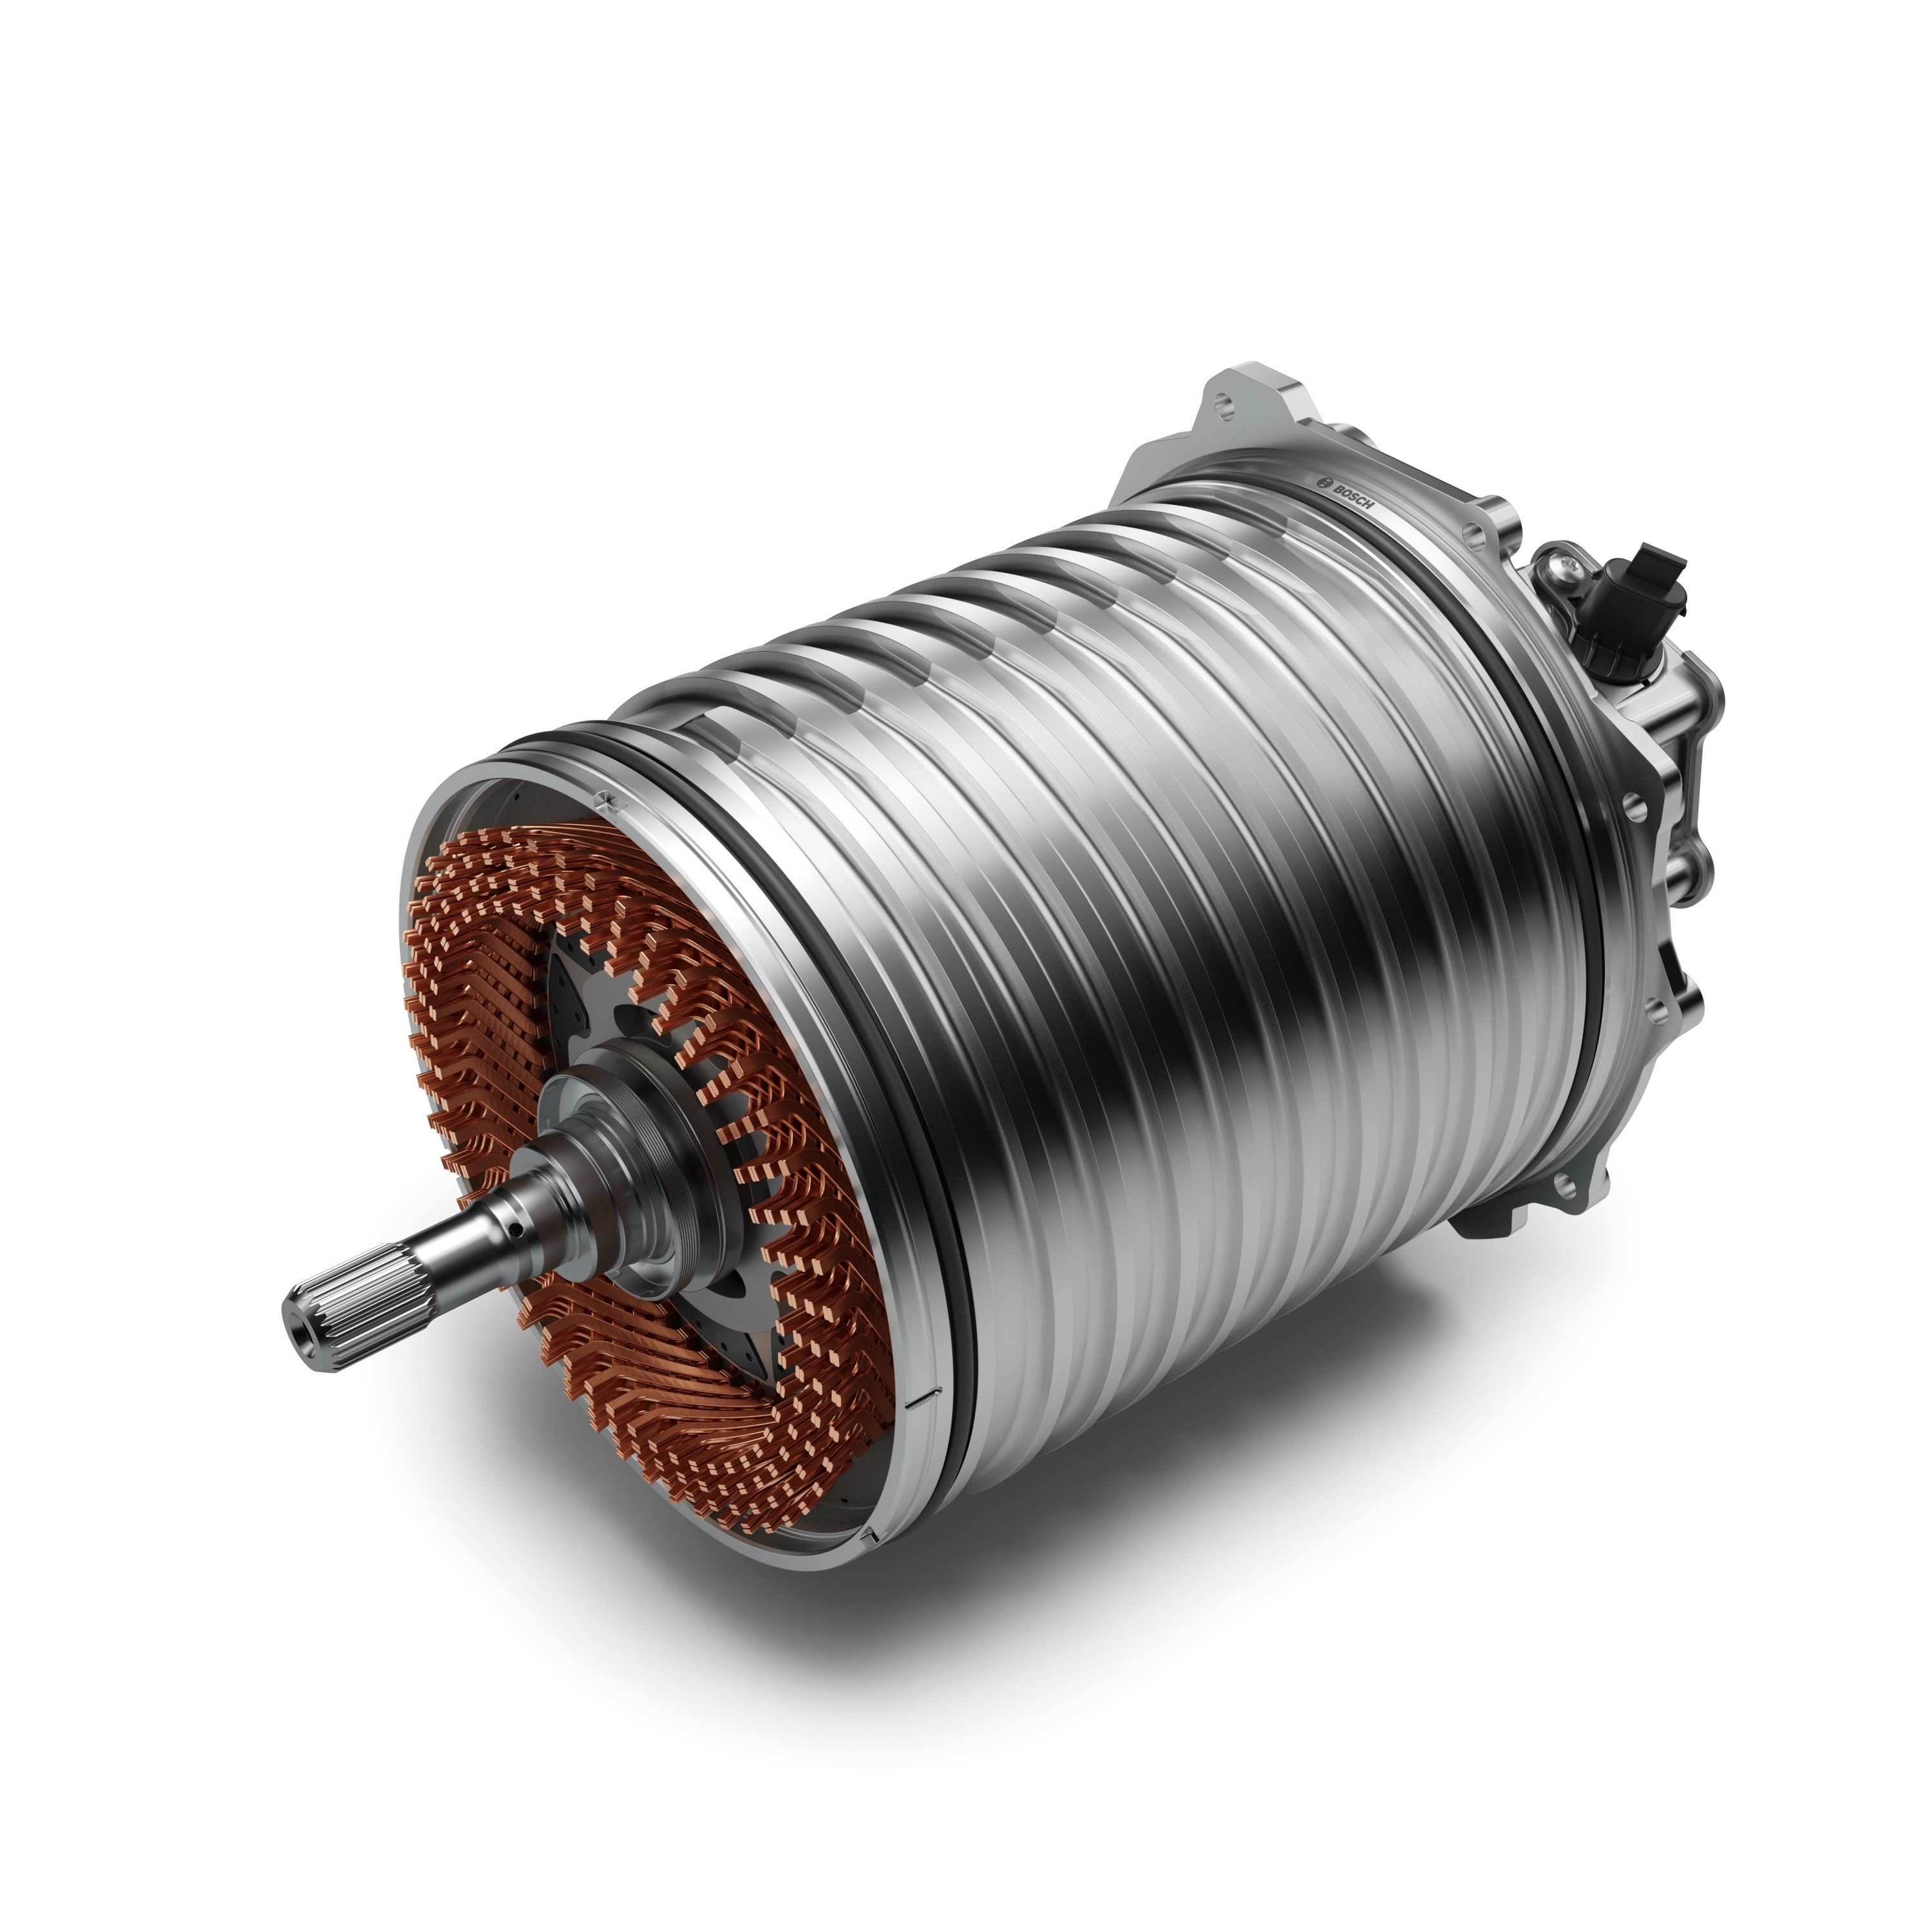 Aktivteile (Rotor und Stator) der 800-Volt-Technik für elektrische  Fahrzeuge - Bosch Media Service